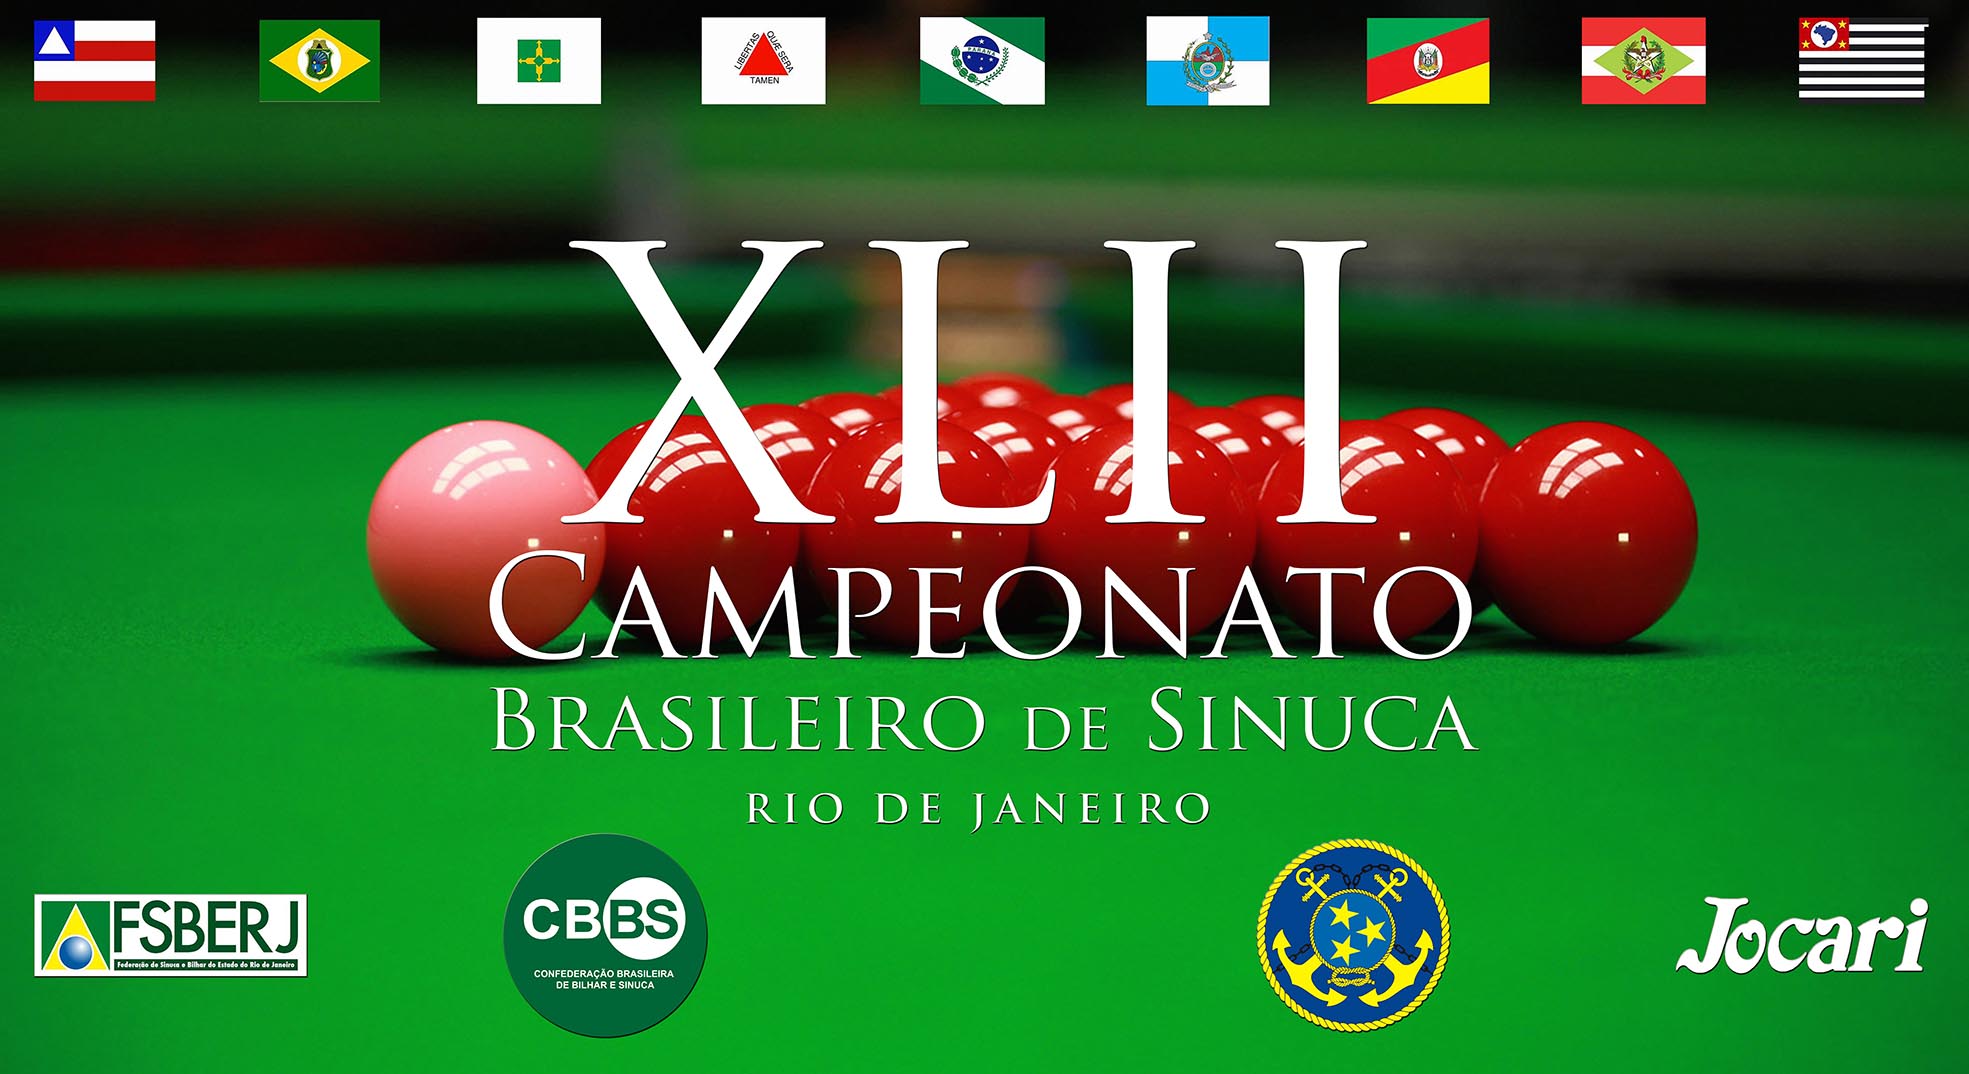 CAMPEONATO BRASILEIRO DE SNOOKER - CBSK-2021 - CBBS CBBS